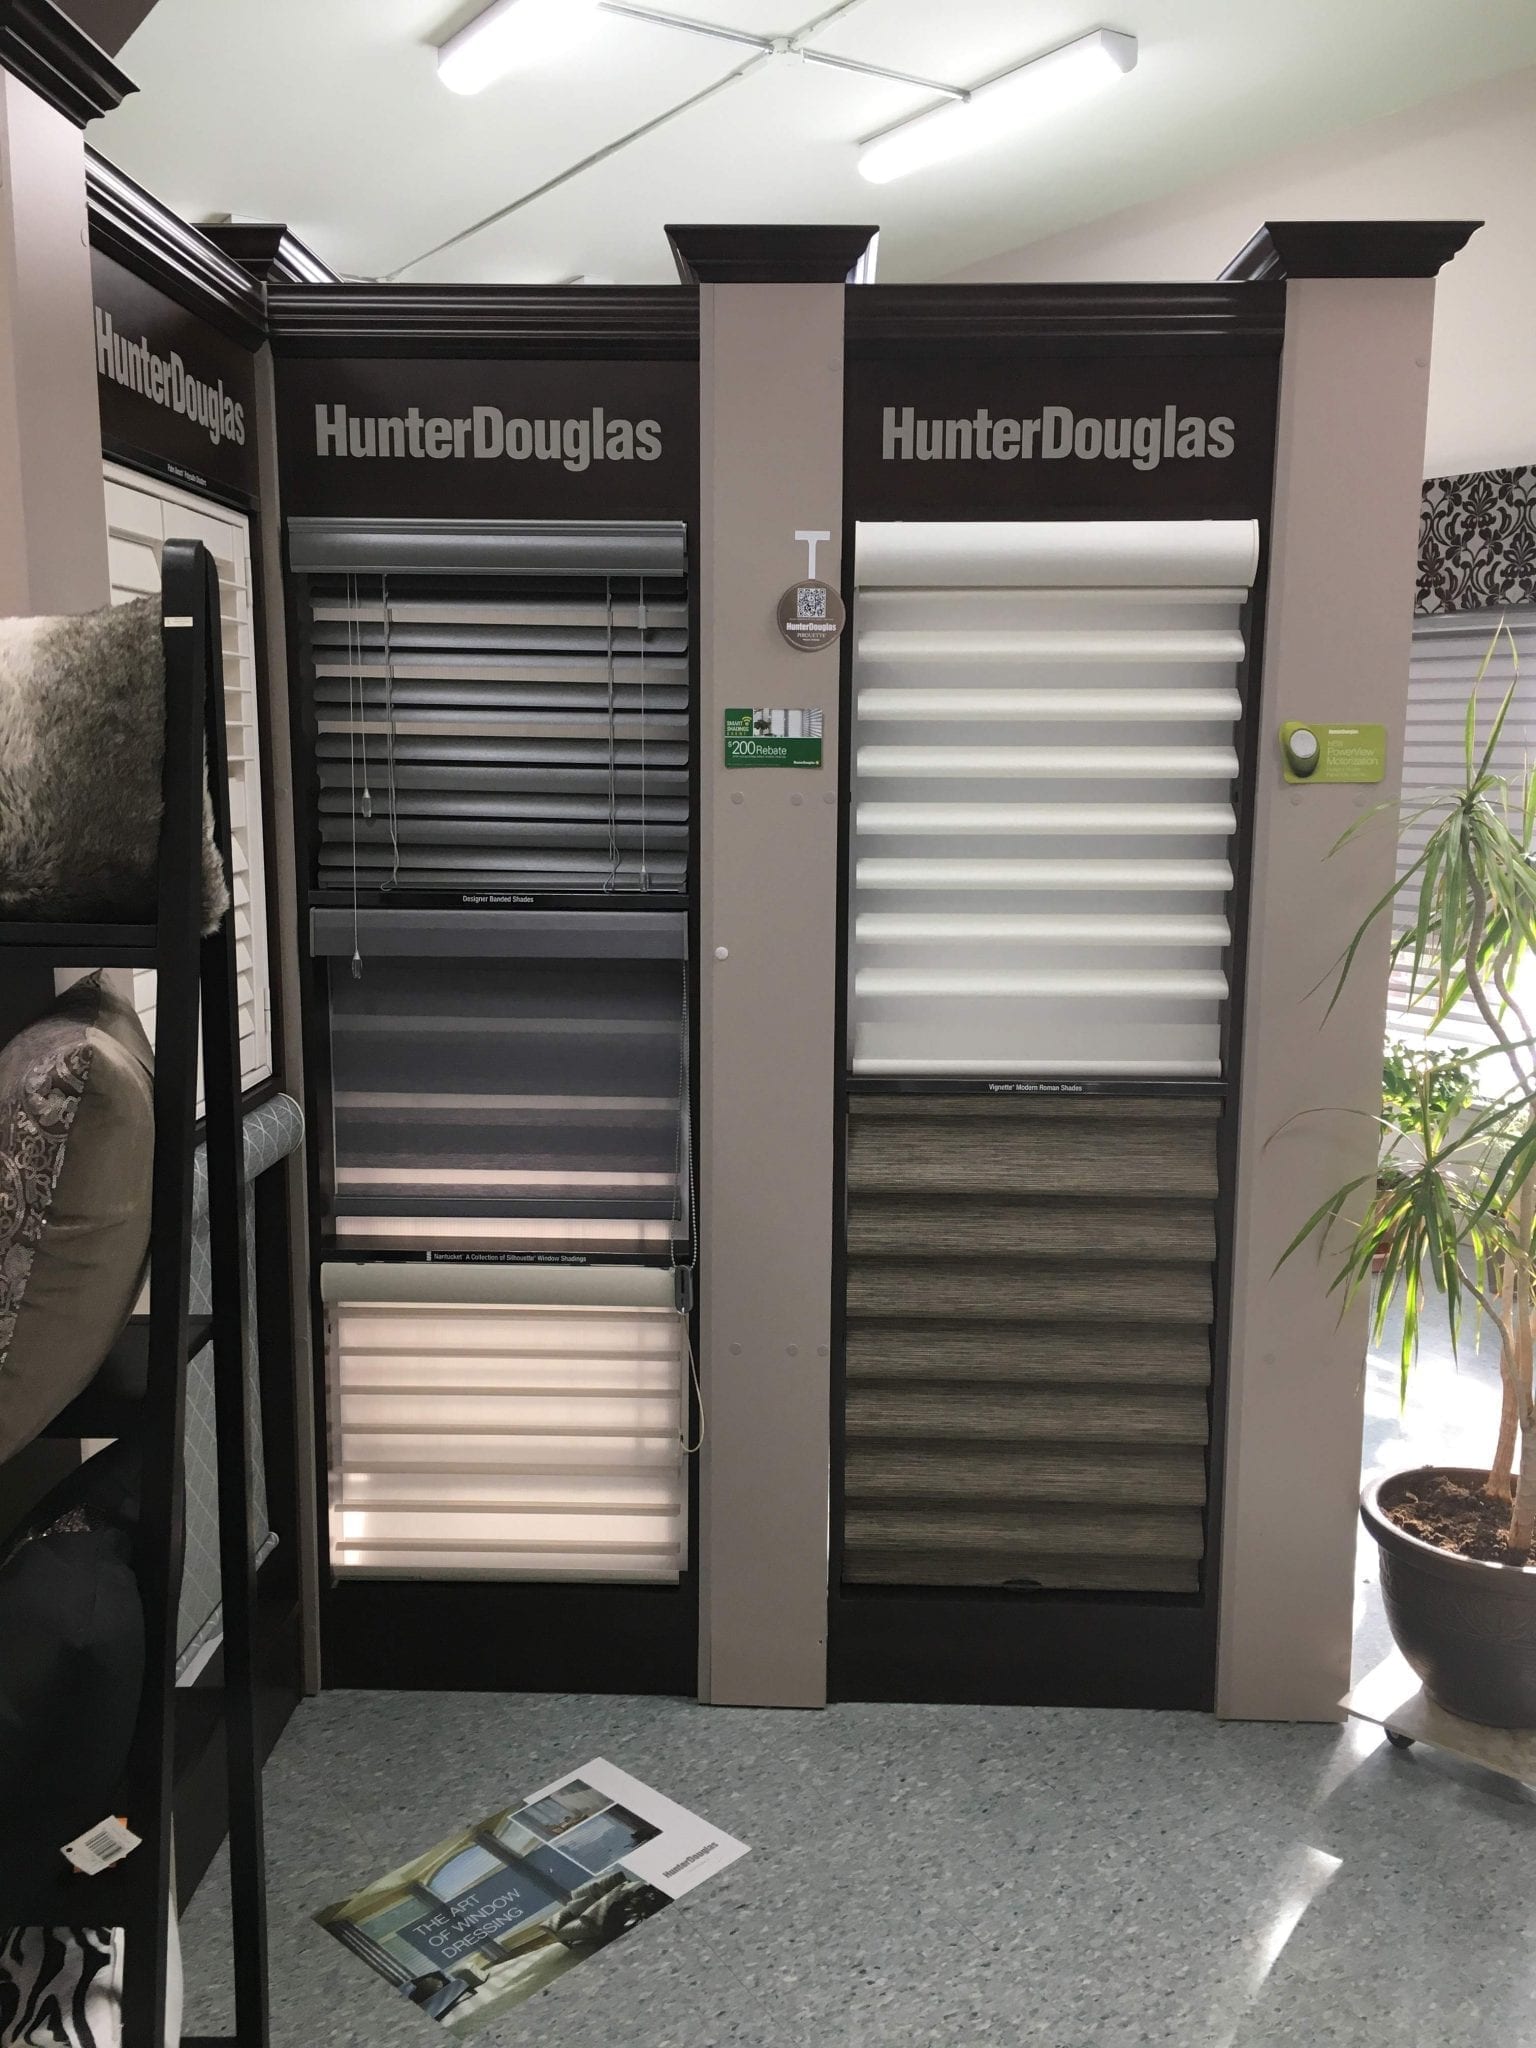 Variety of Hunter Douglas blinds